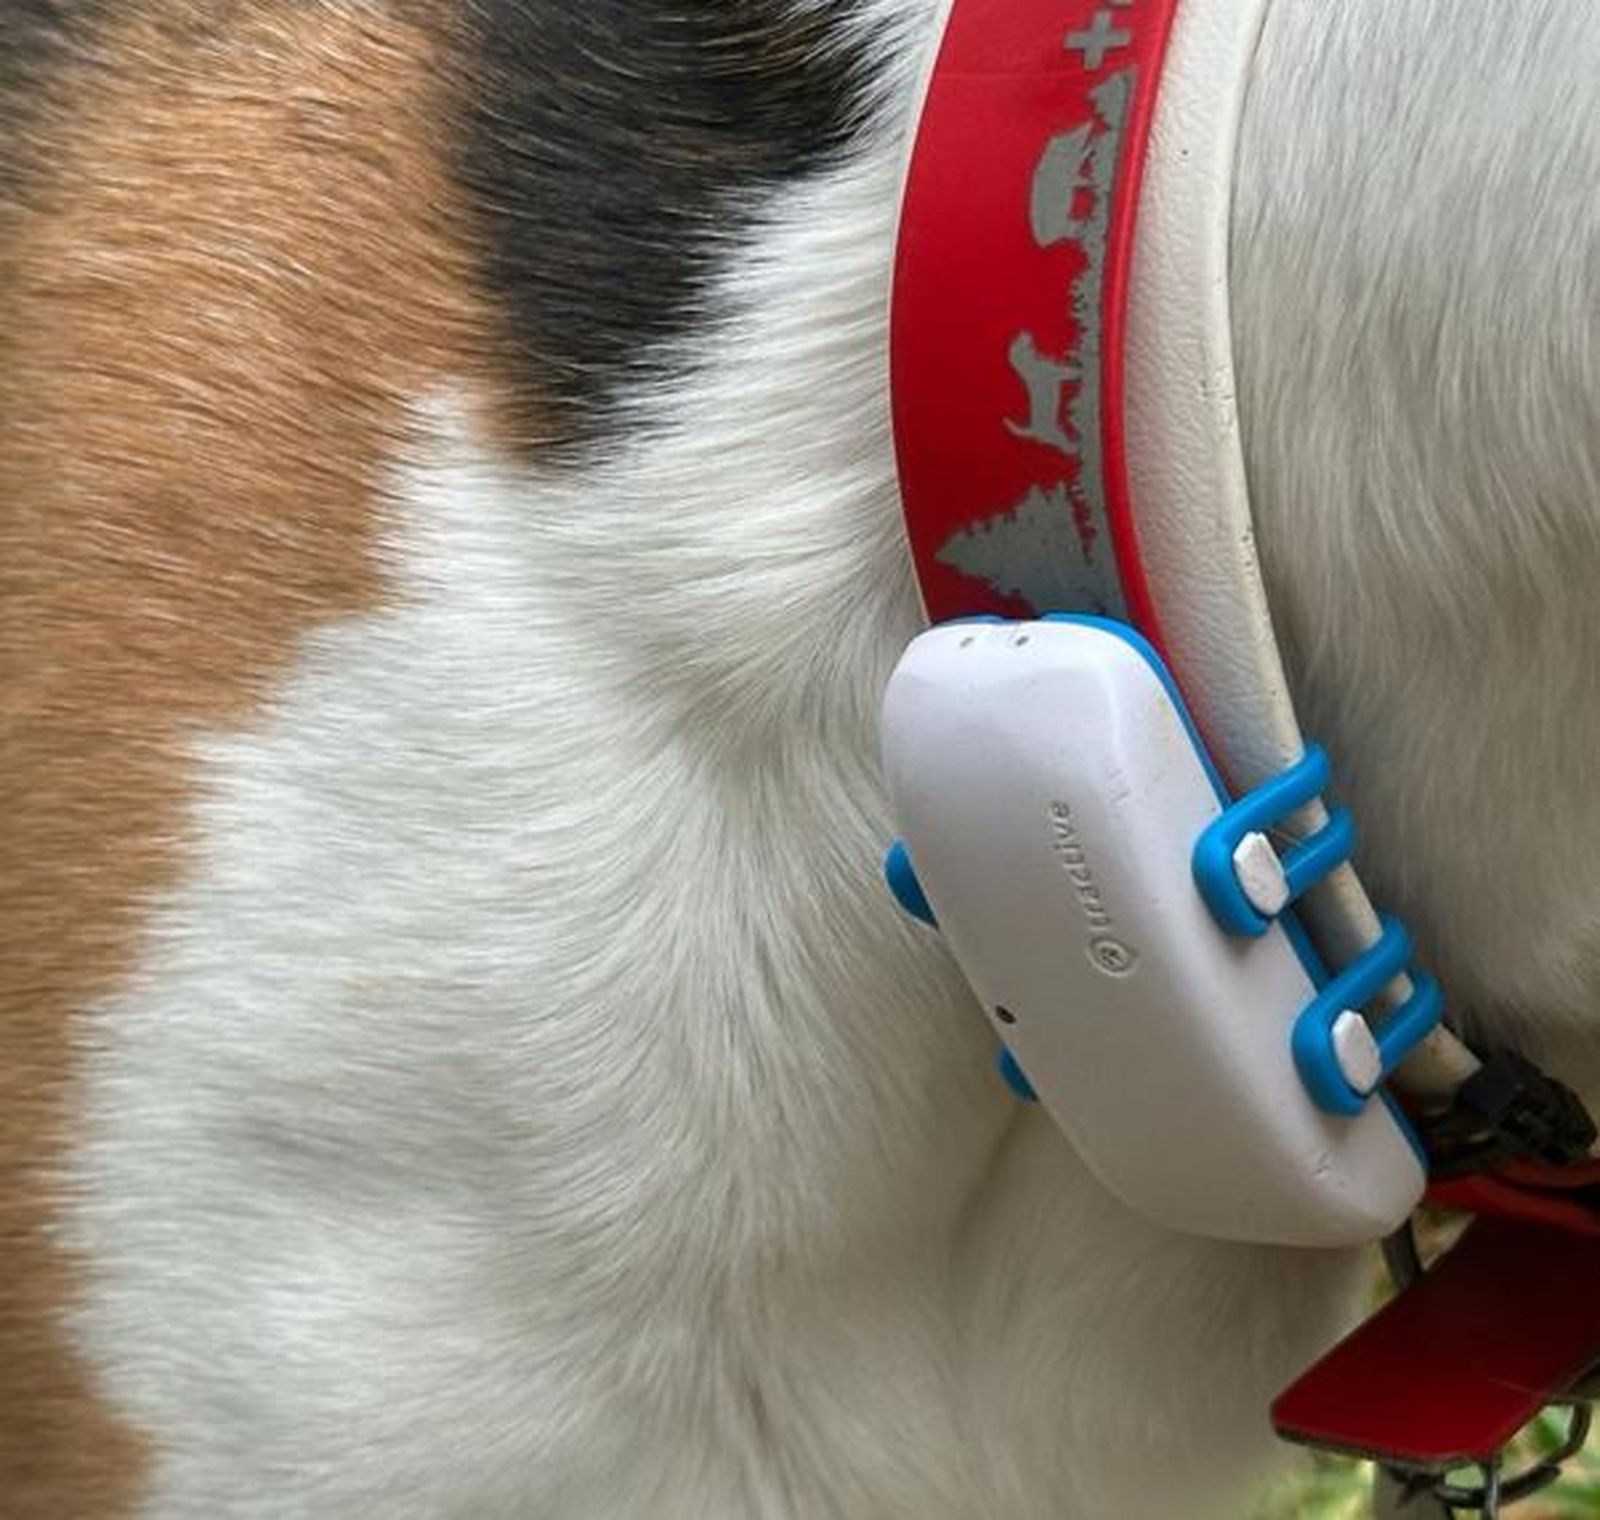 Ein Bildausschnitt eines braun-weiß-schwarzen Hundefells mit rotem Halsband und Tractive-GPS-Tracker in Nahaufnahme